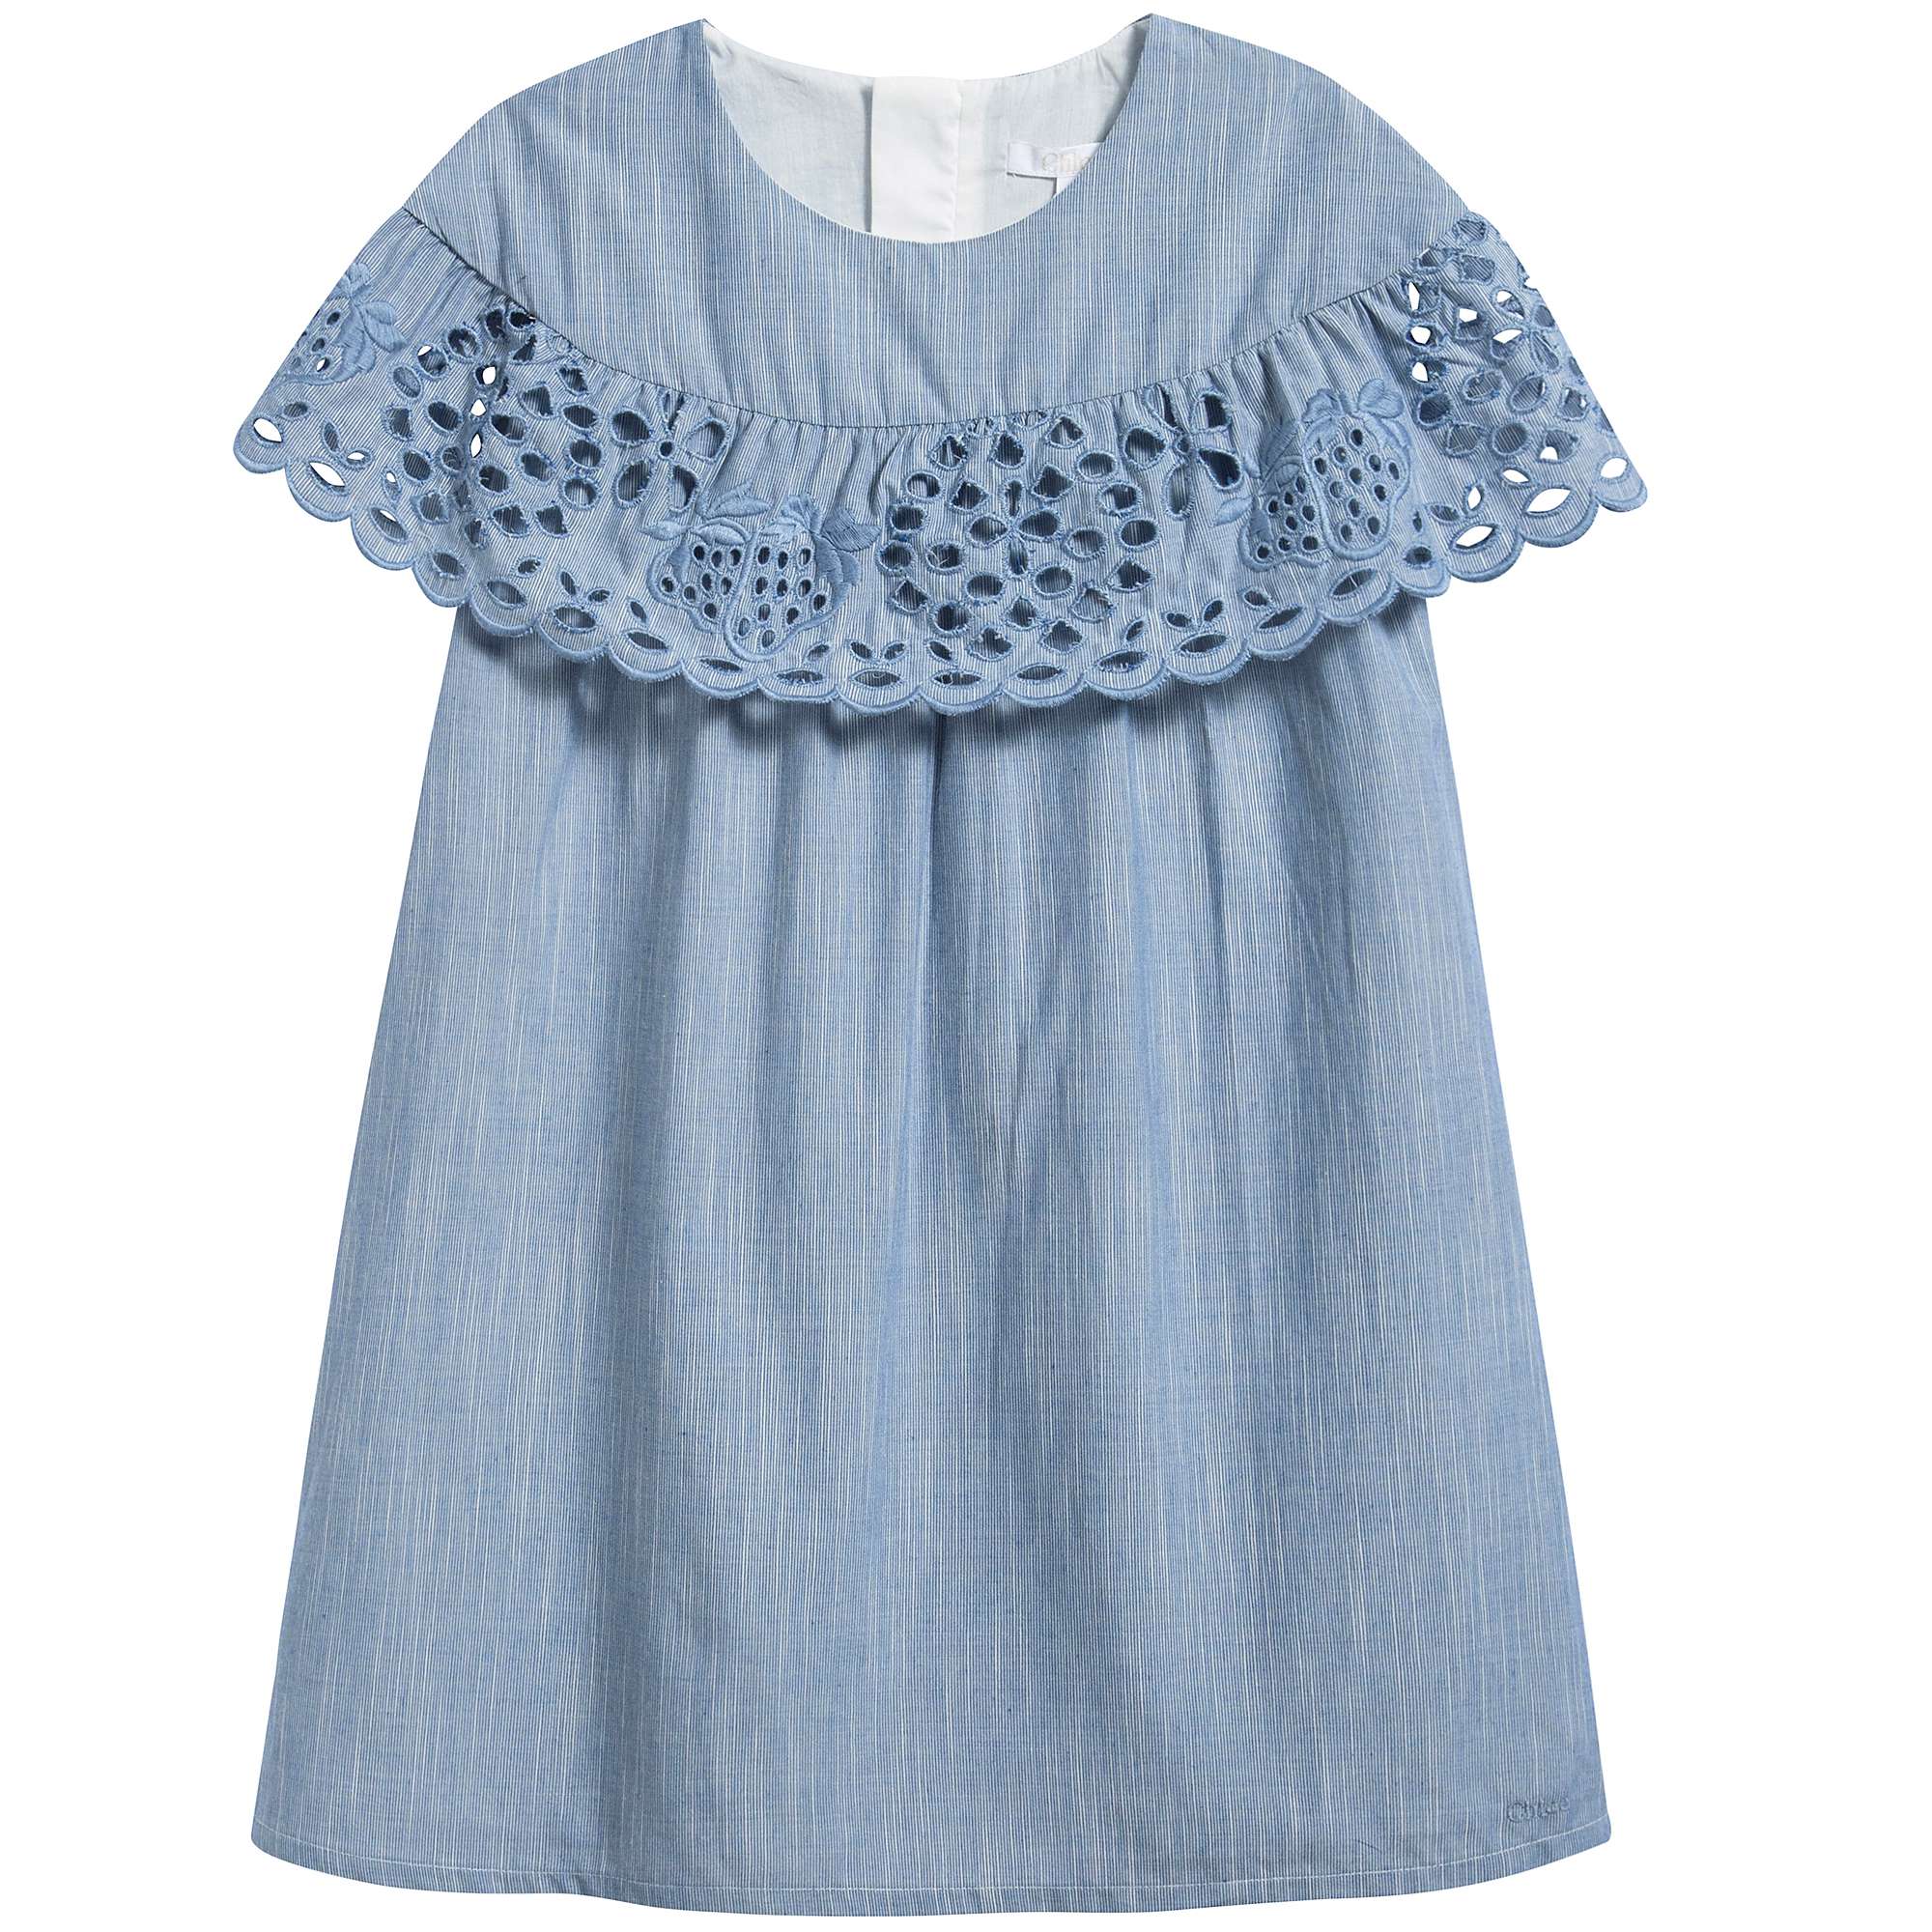 Girls Denim Blue Cotton Dress